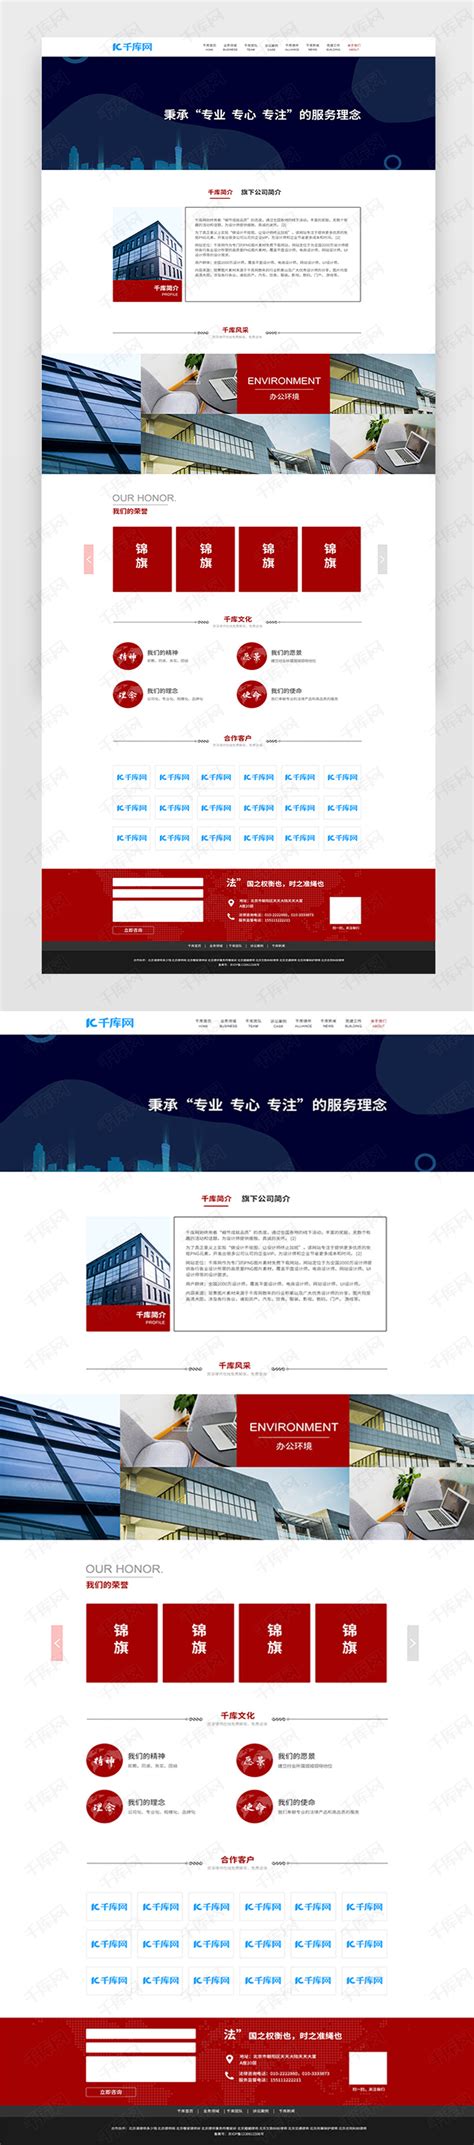 红色法律律所网站页面ui界面设计素材-千库网